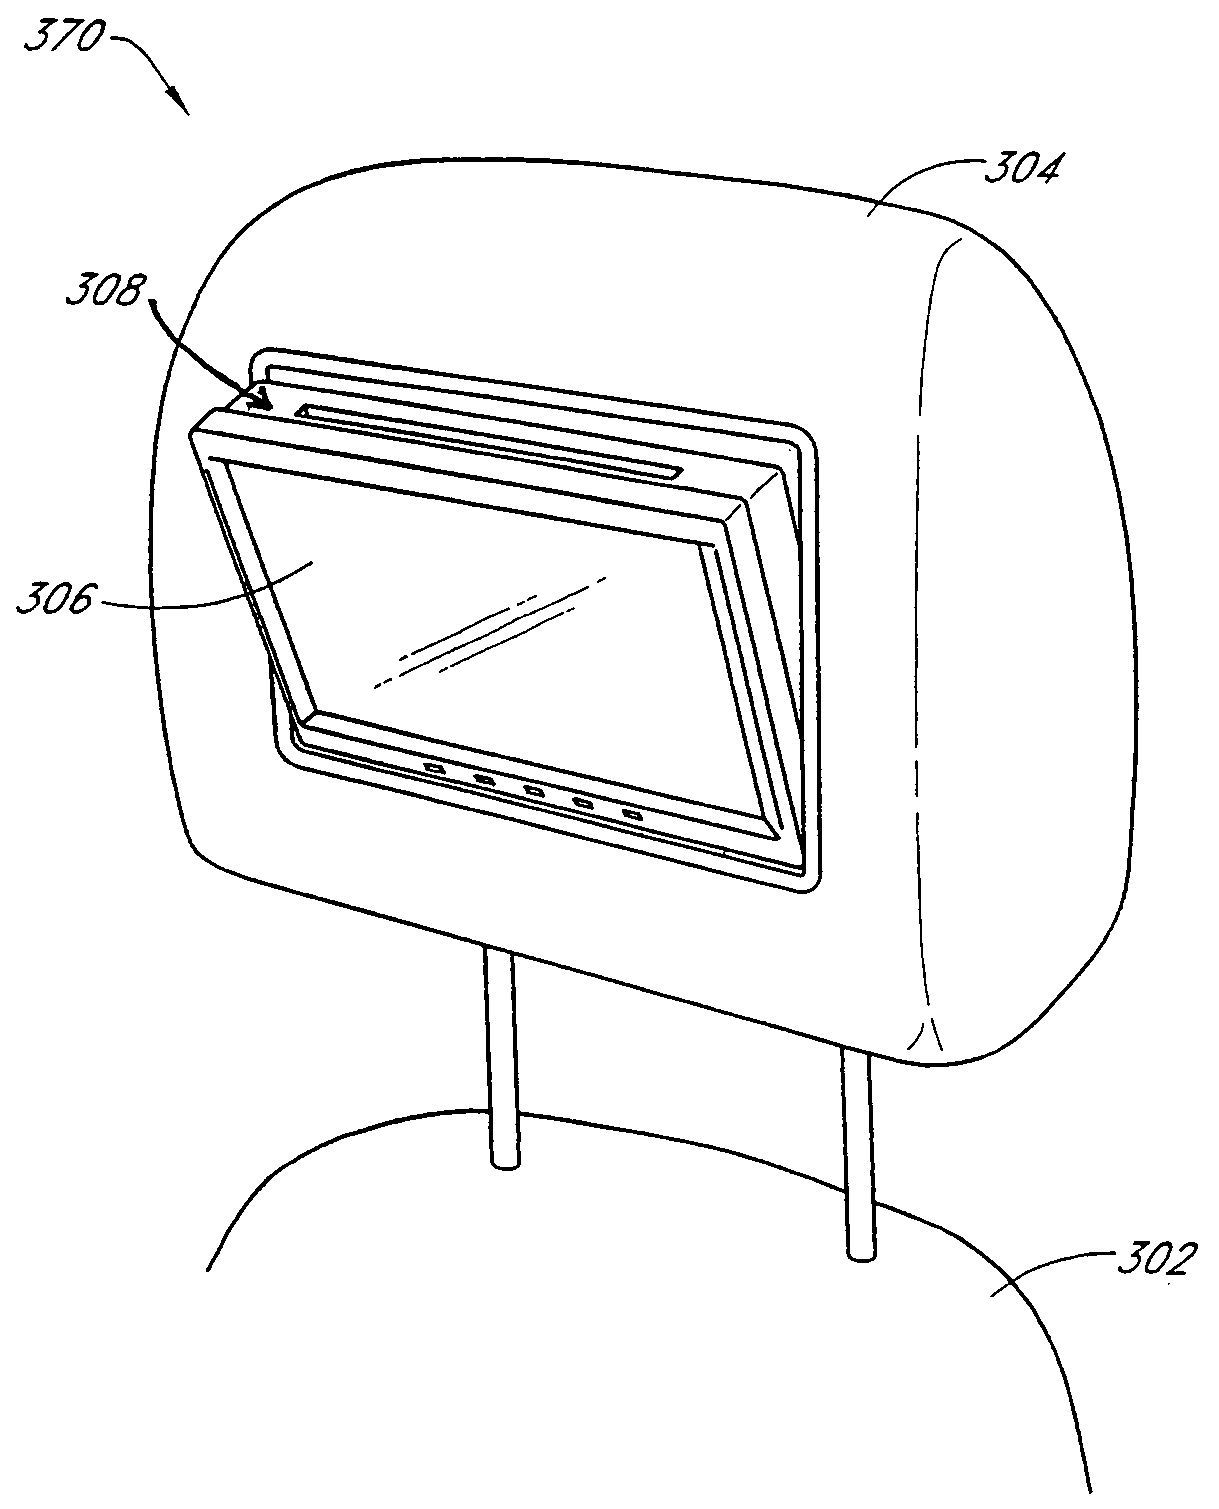 Headrest/head restraint having an integrated video screen